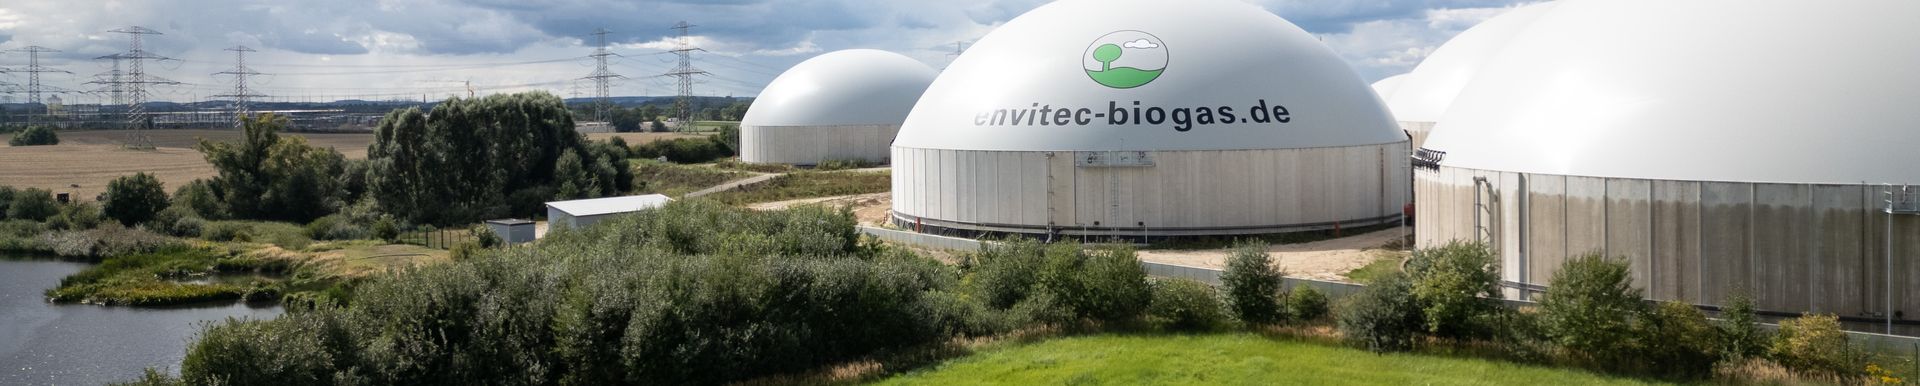 EnviTec Biogas AG